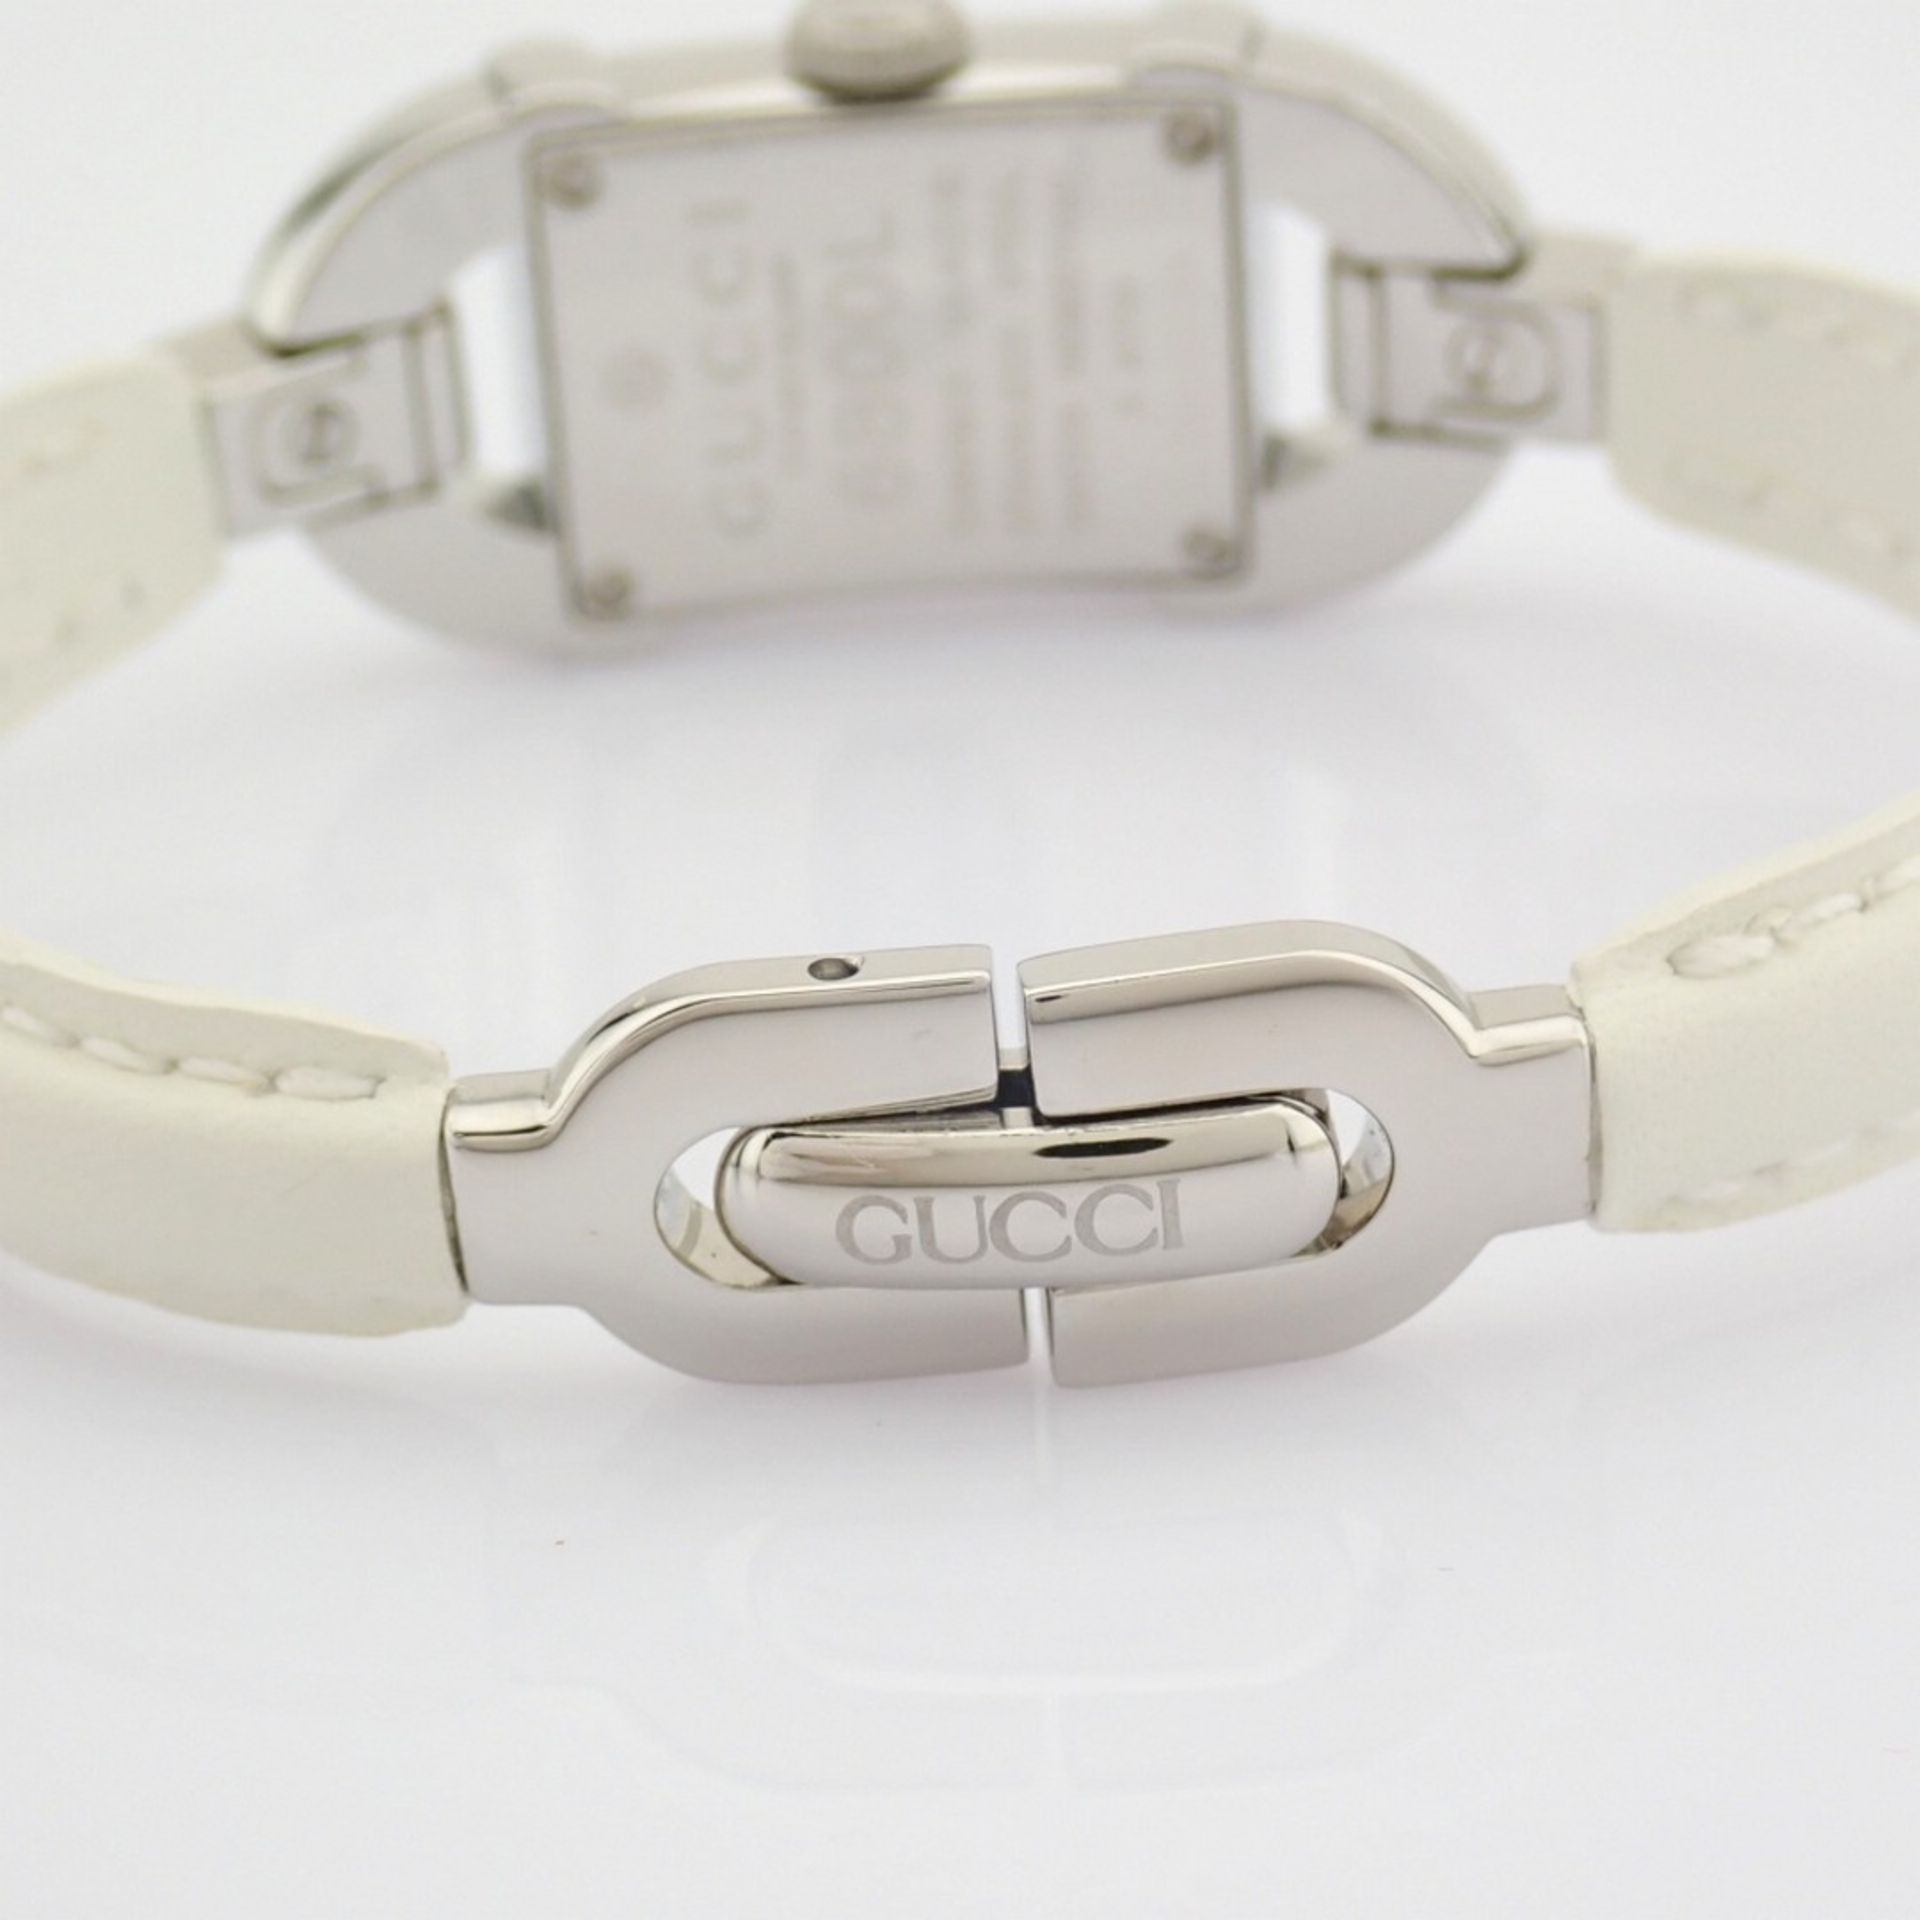 Gucci / 6800L - (Unworn) Lady's Steel Wrist Watch - Image 9 of 10